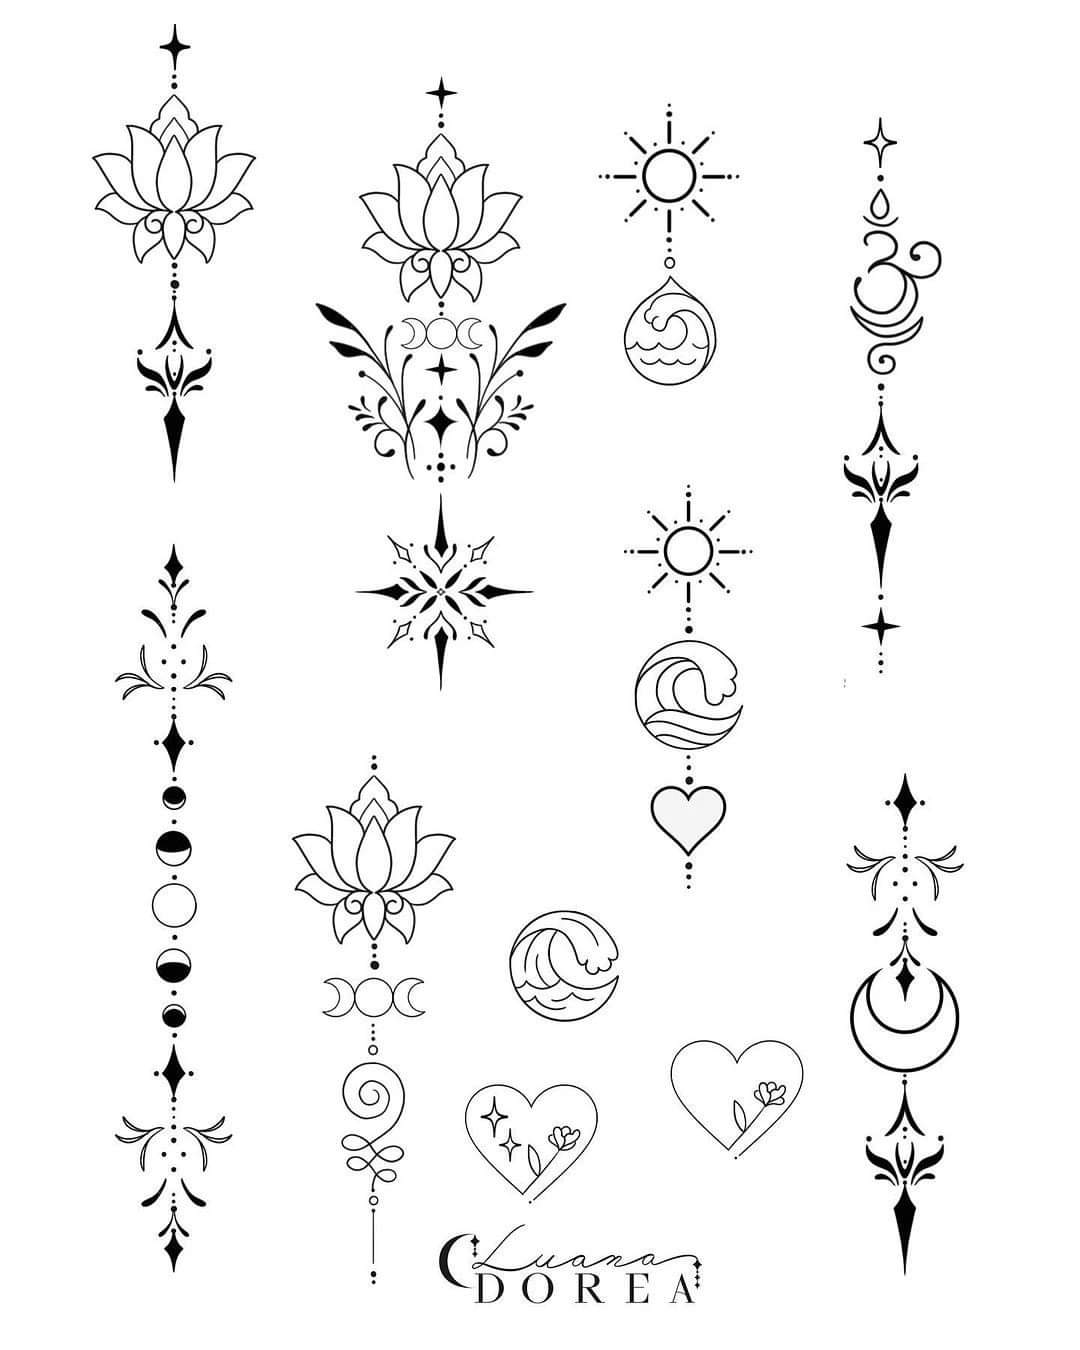 109 Tatuajes en la Columna varios bocetos longitudinales con fases lunares flor de loto unalome corazones